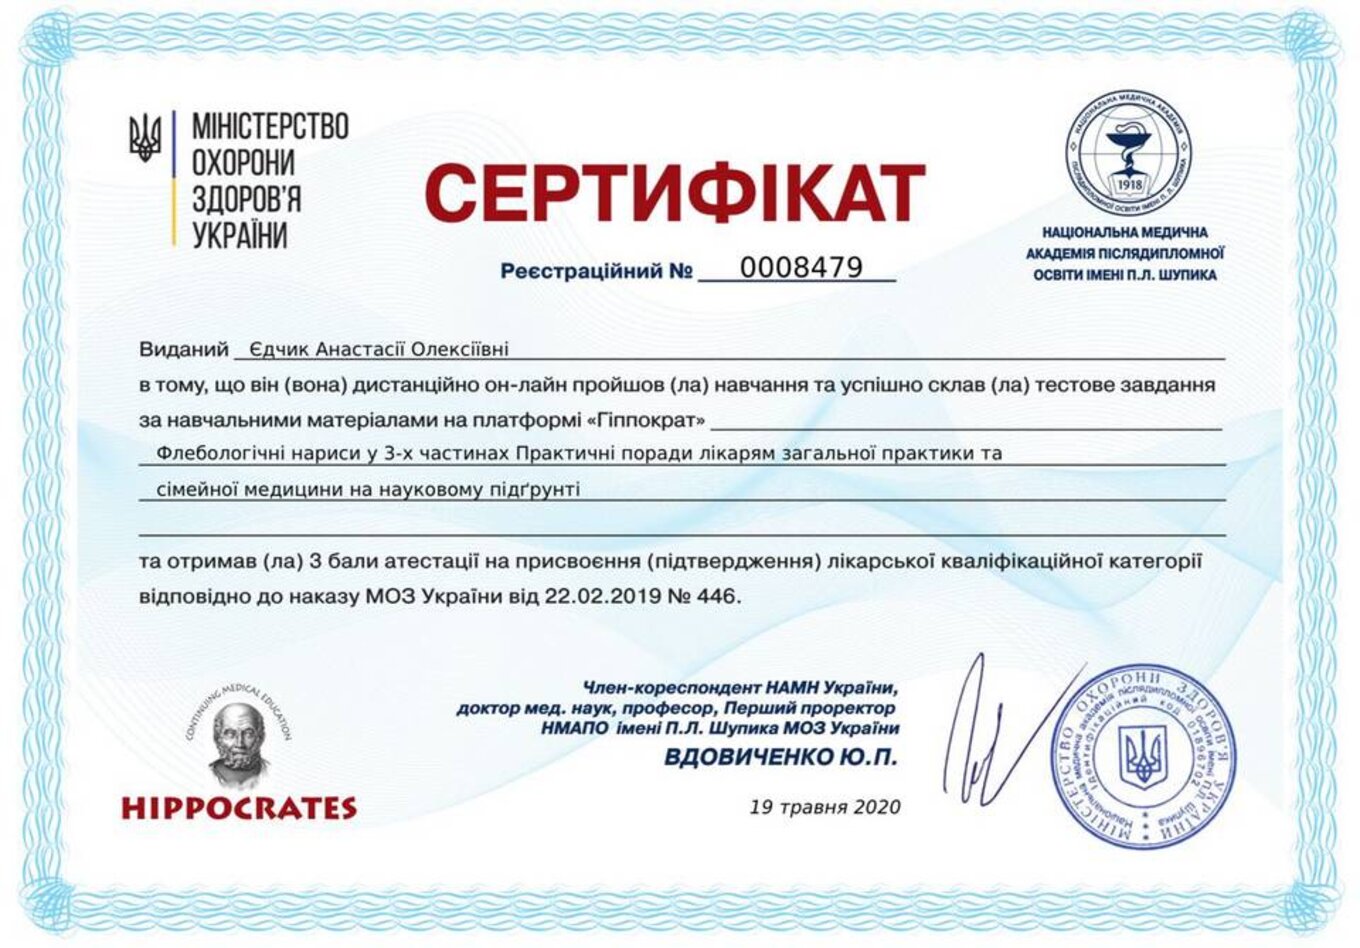 certificates/yedchik-anastasiya-oleksiyivna/erc-edchik-cert-16.jpg